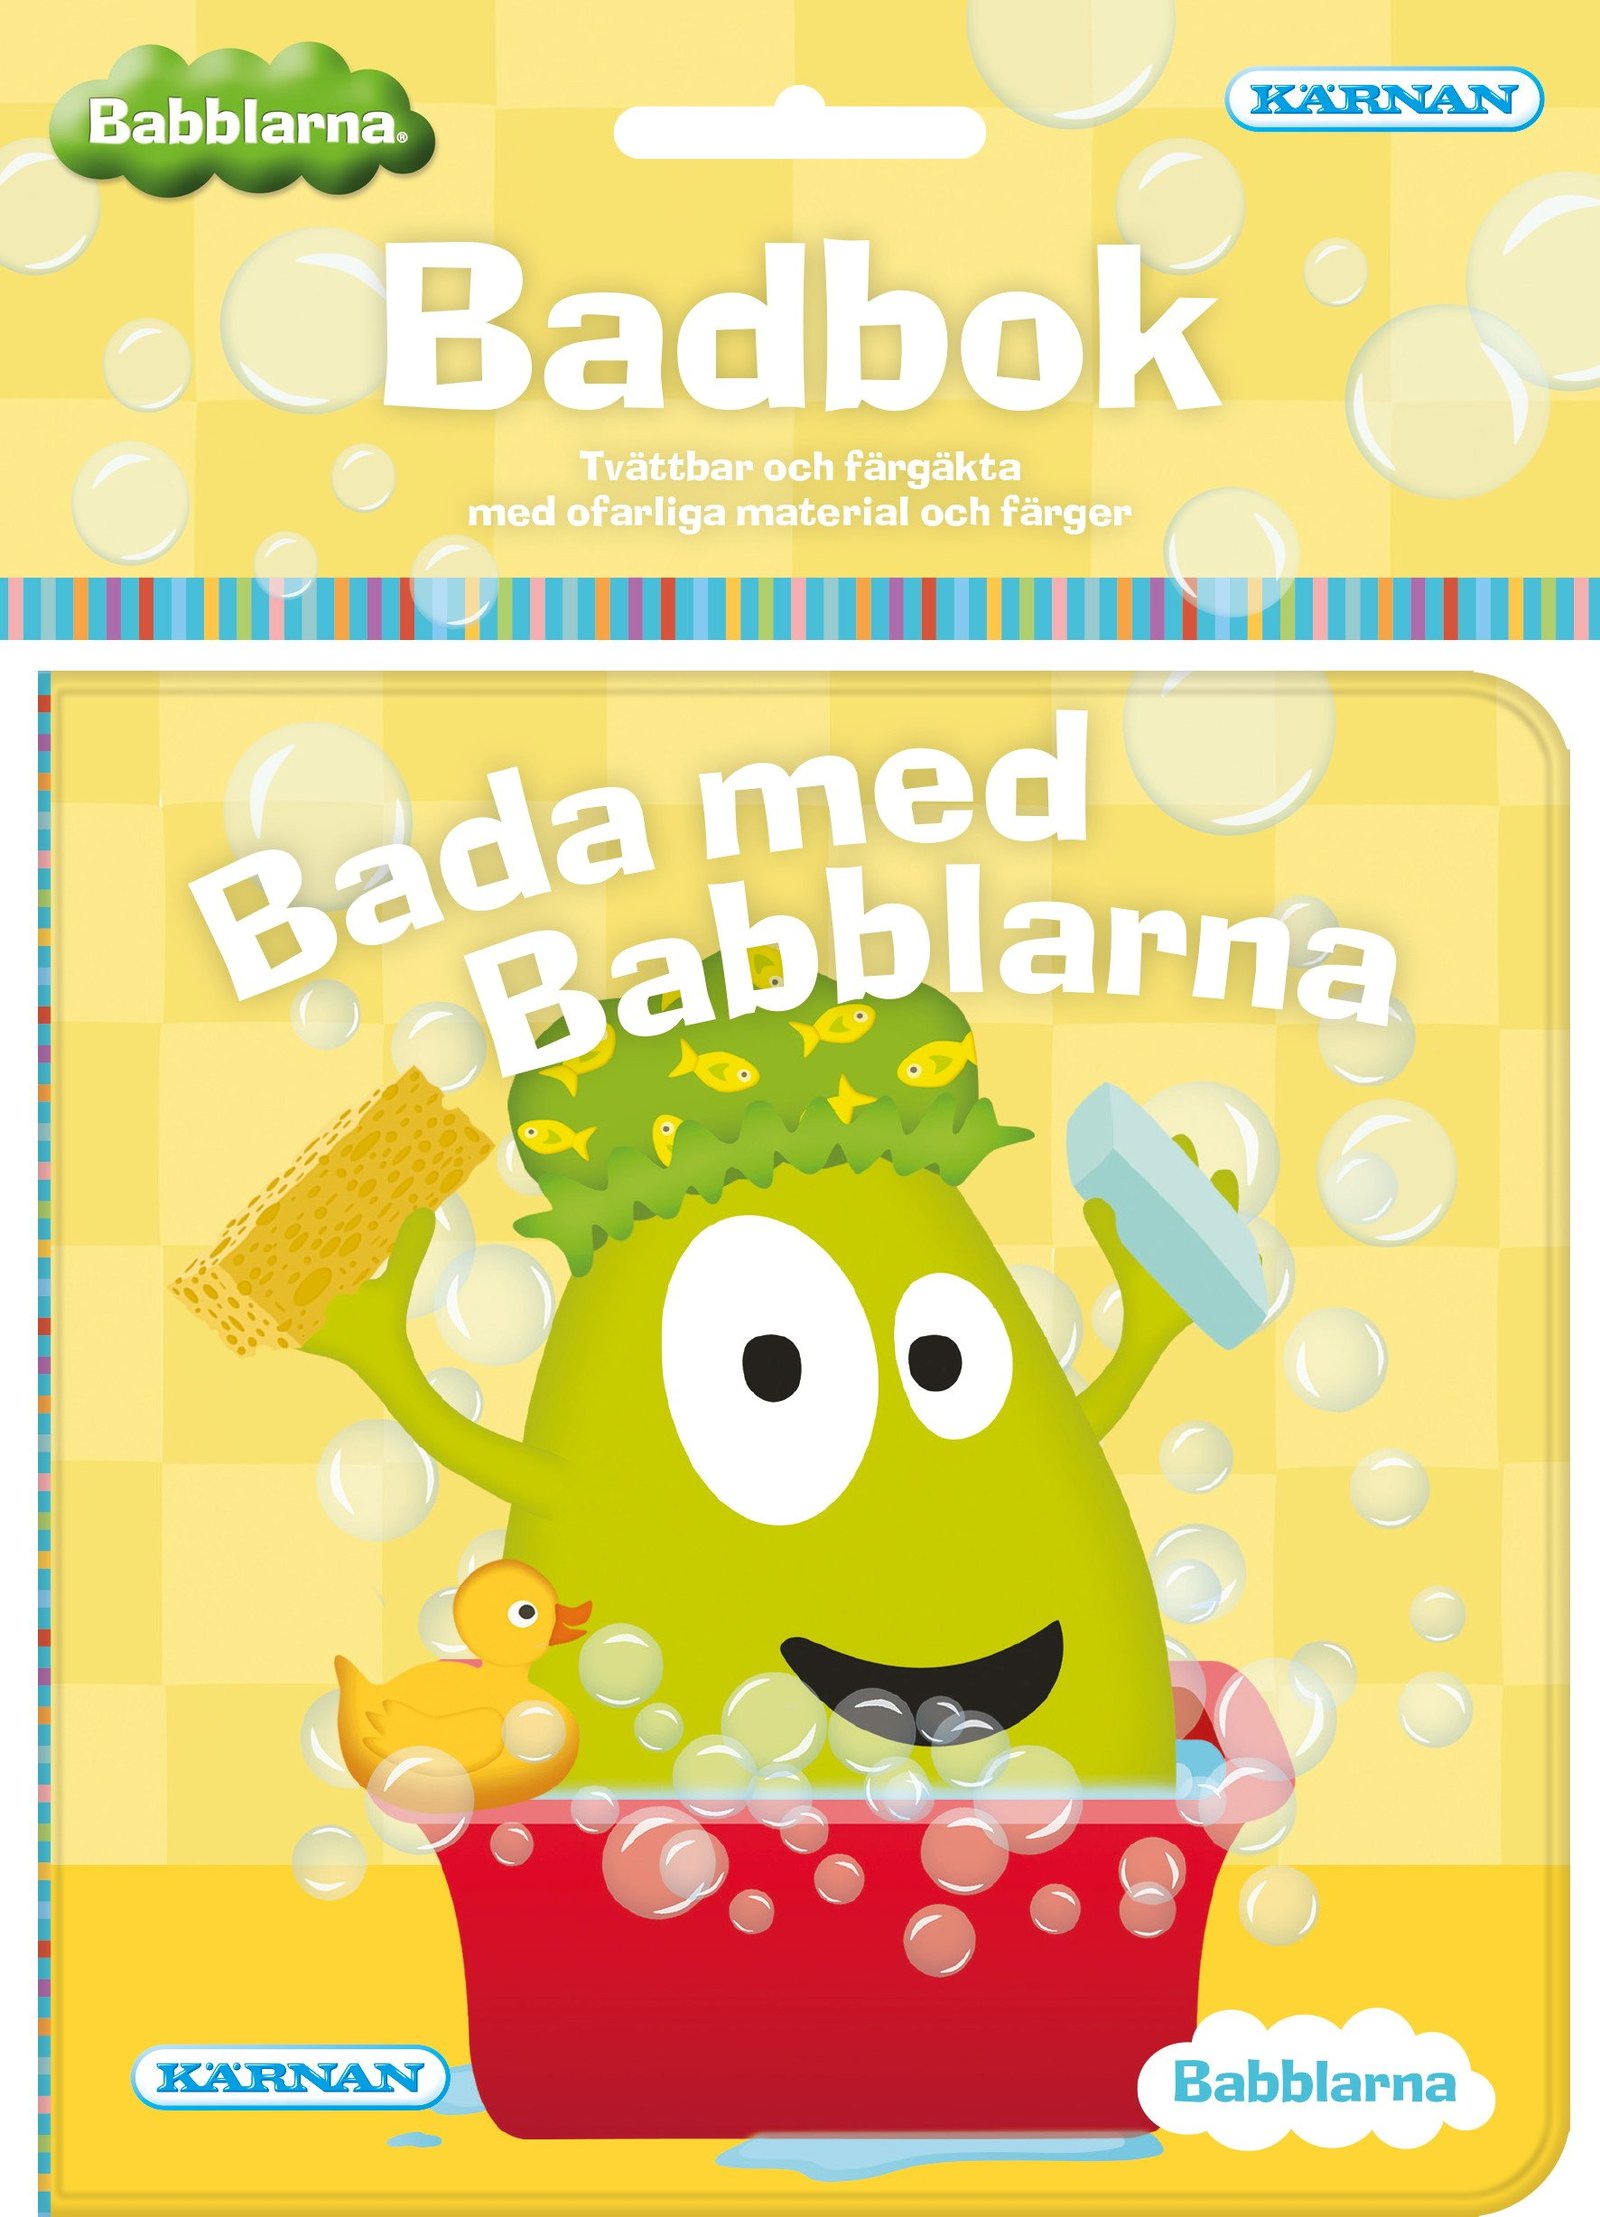 Badbok – Badkul med Babblarna